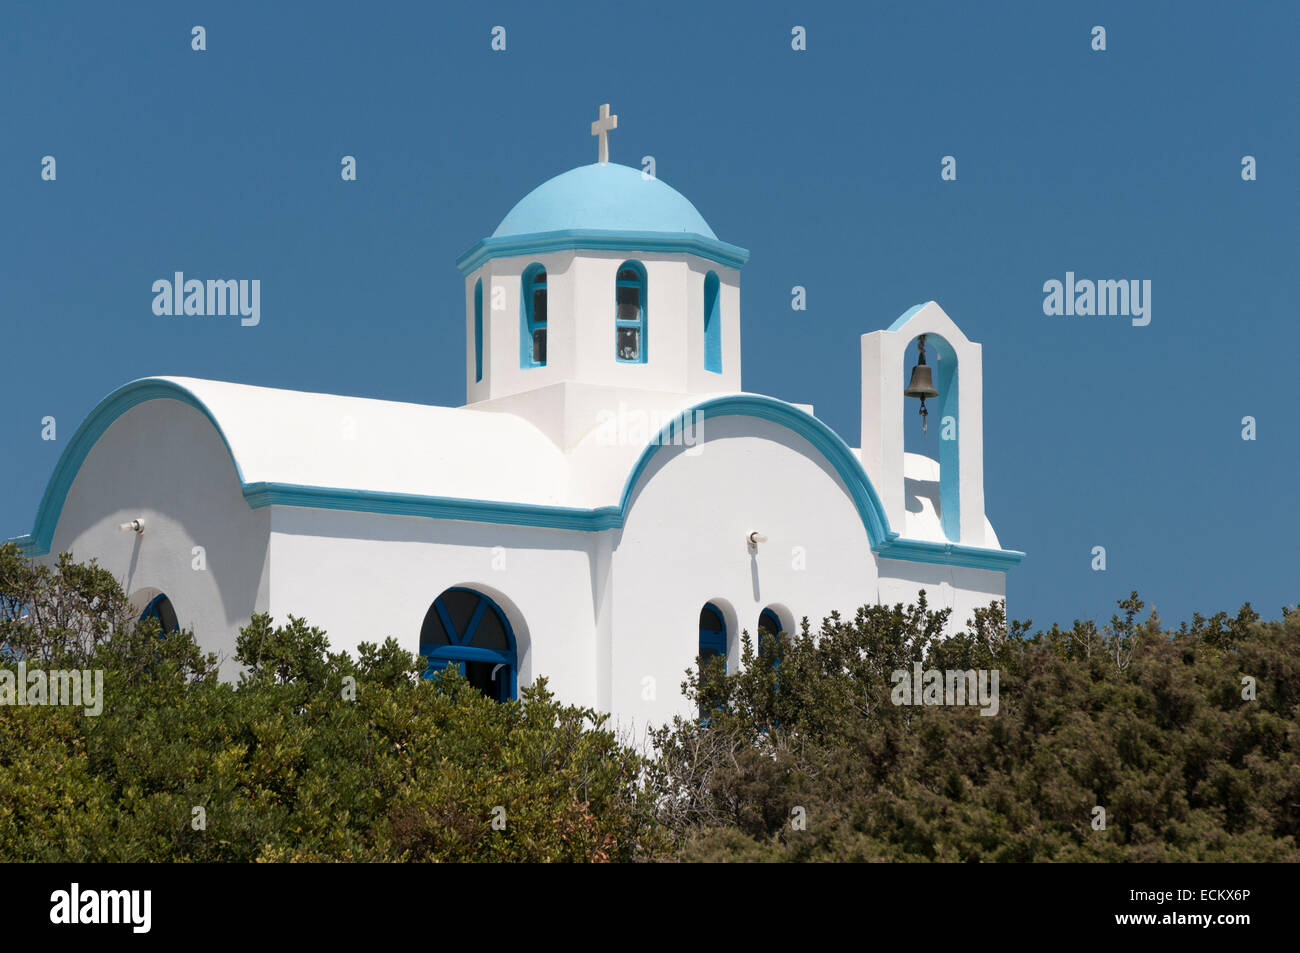 Traditionelle griechische Kirche mit blauer Kuppel und kleine Glocke Stockfoto